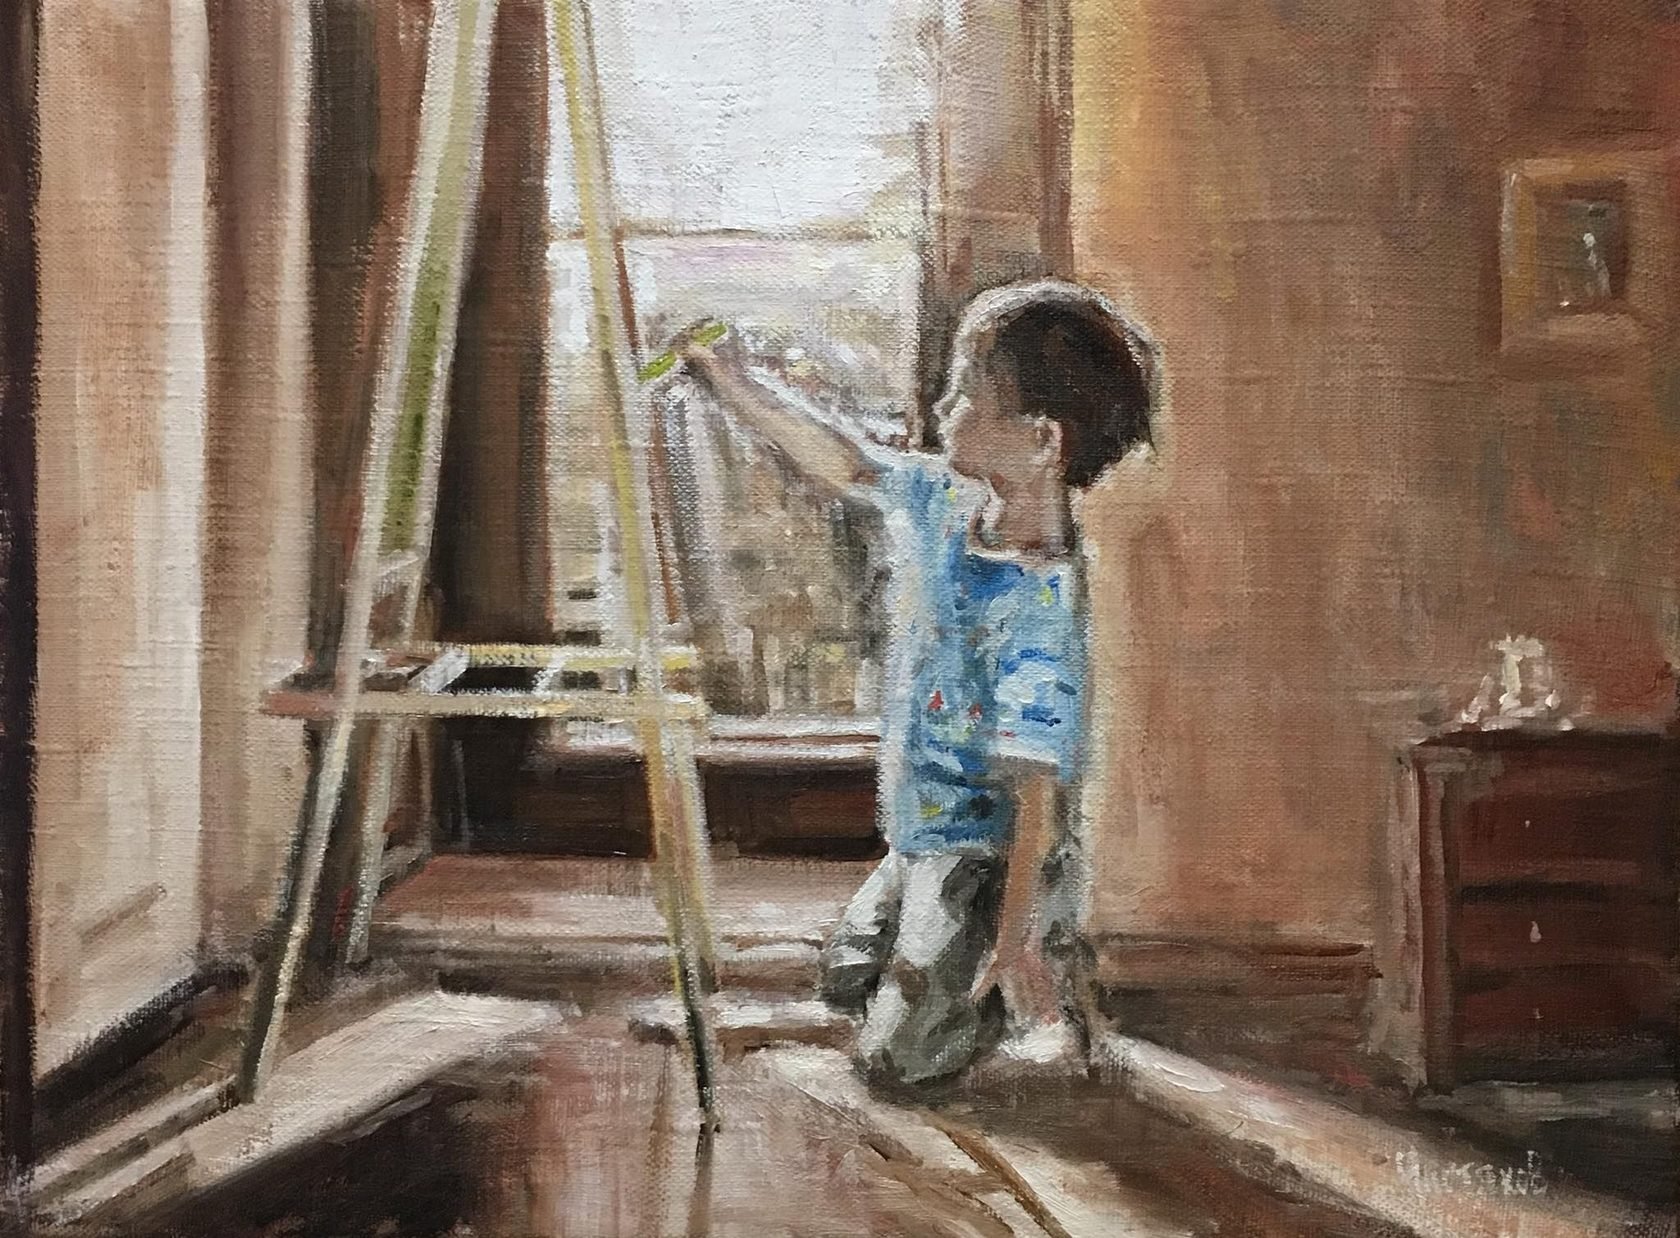 Картина мальчик и кукла у стеклянной двери. Картины художников с детьми. Мальчики в картинах художников. Мальчик художник. Юный художник.